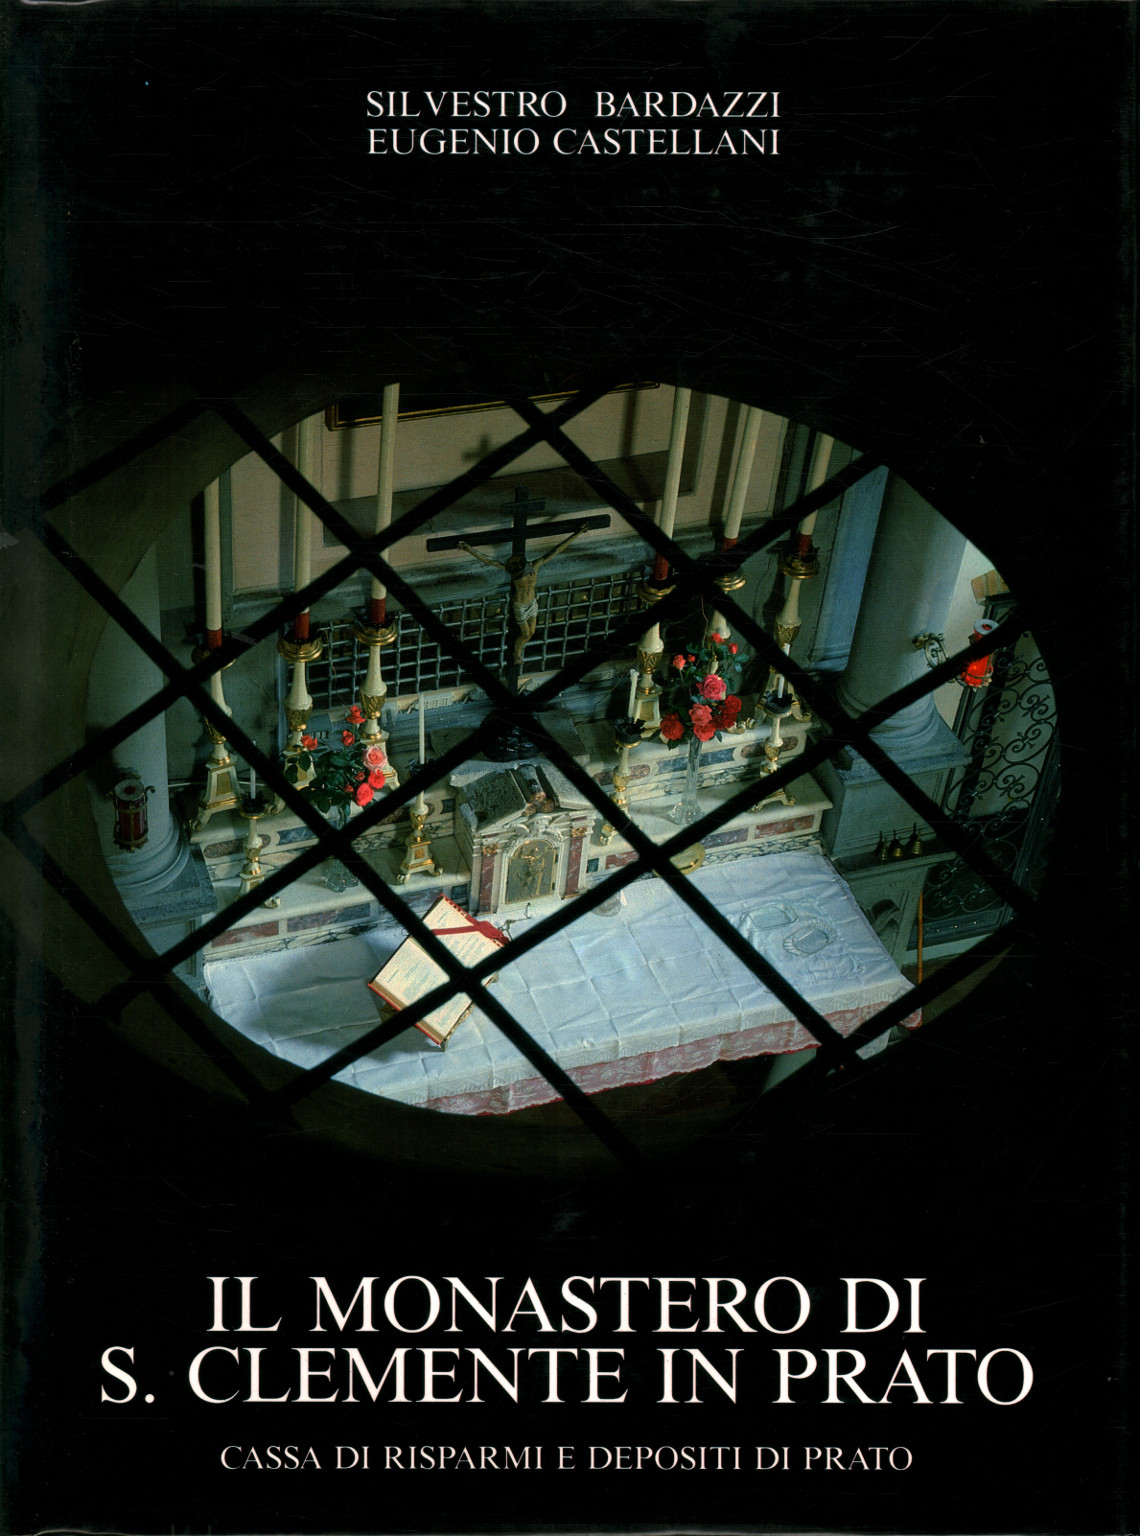 El Monasterio de S. Clemente en Prato, Silvestro Bardazzi y Eugenio Castellani